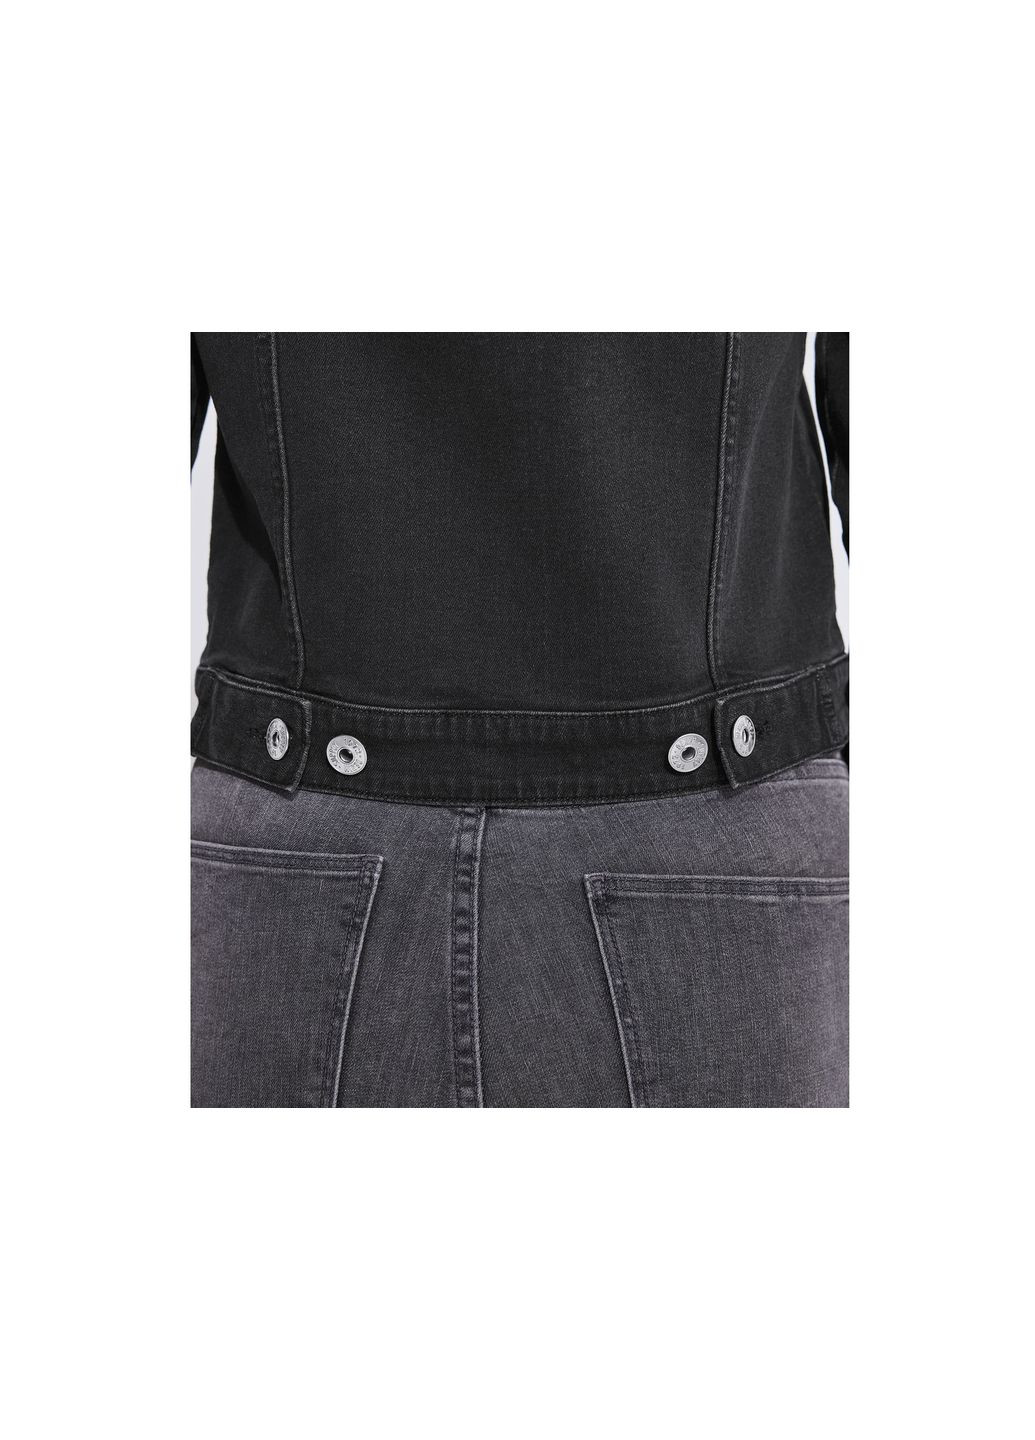 Чорна демісезонна джинсова куртка прямого крою для жінки lidl 416948 40(m) чорний Esmara